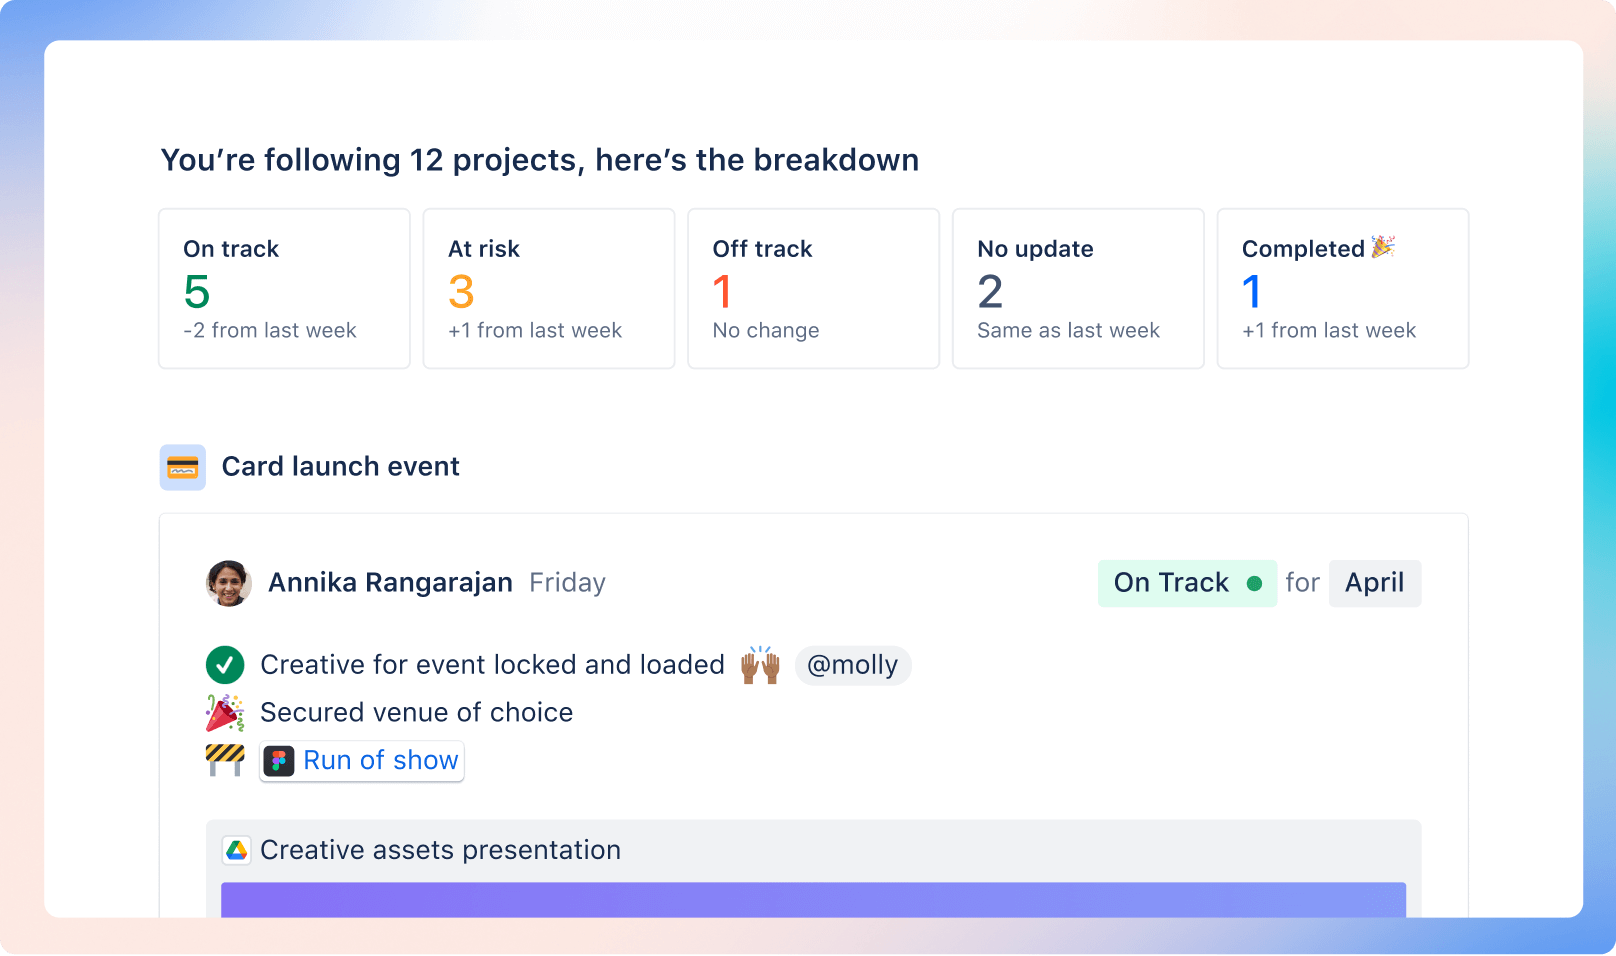 Project breakdown